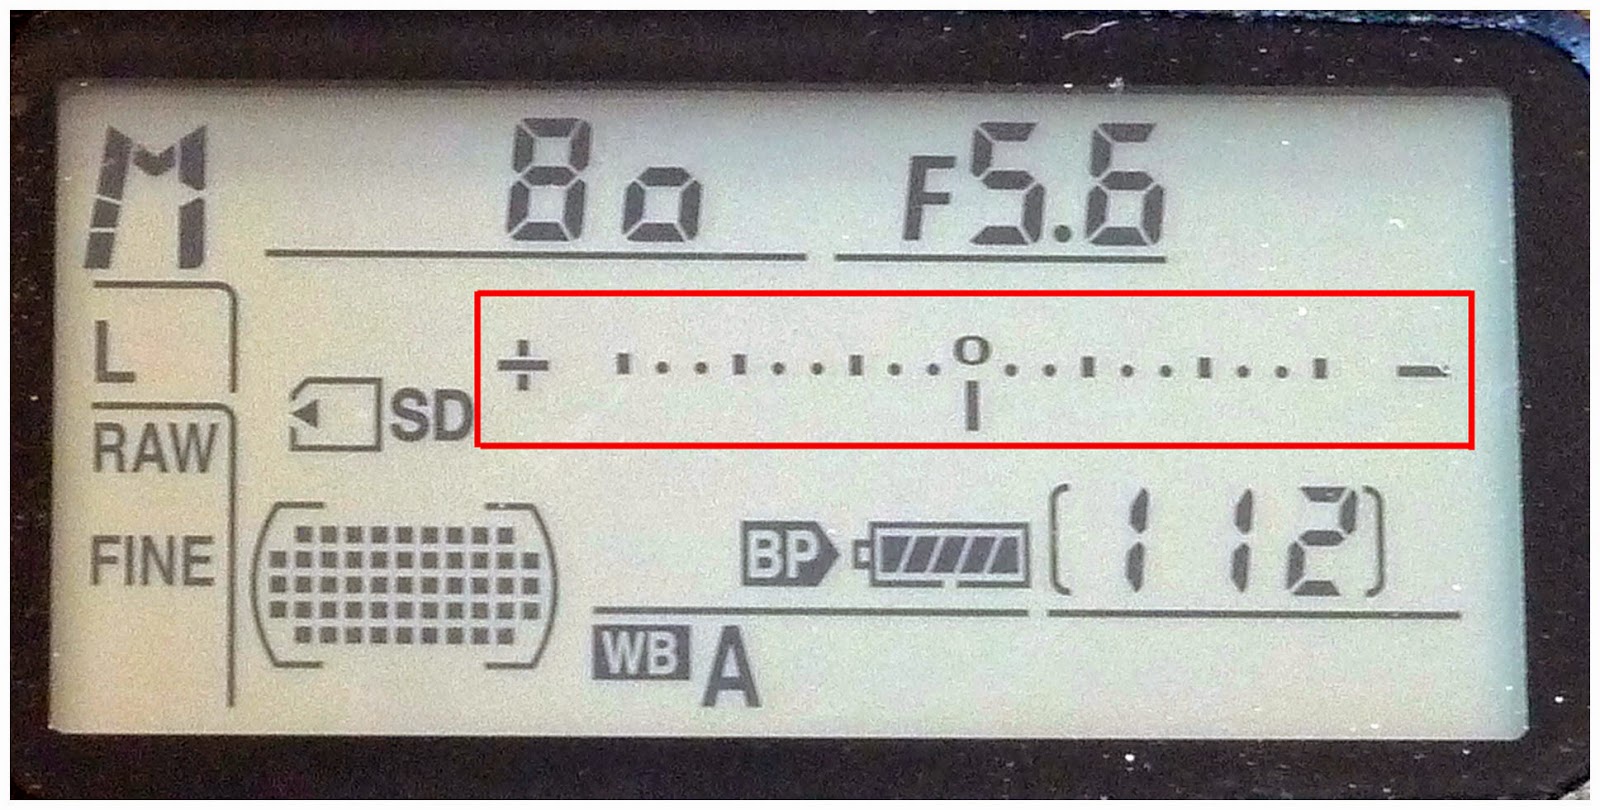 Imagen del fotómetro de la cámara visto en la pantalla LCD superior de una cámara Nikon.